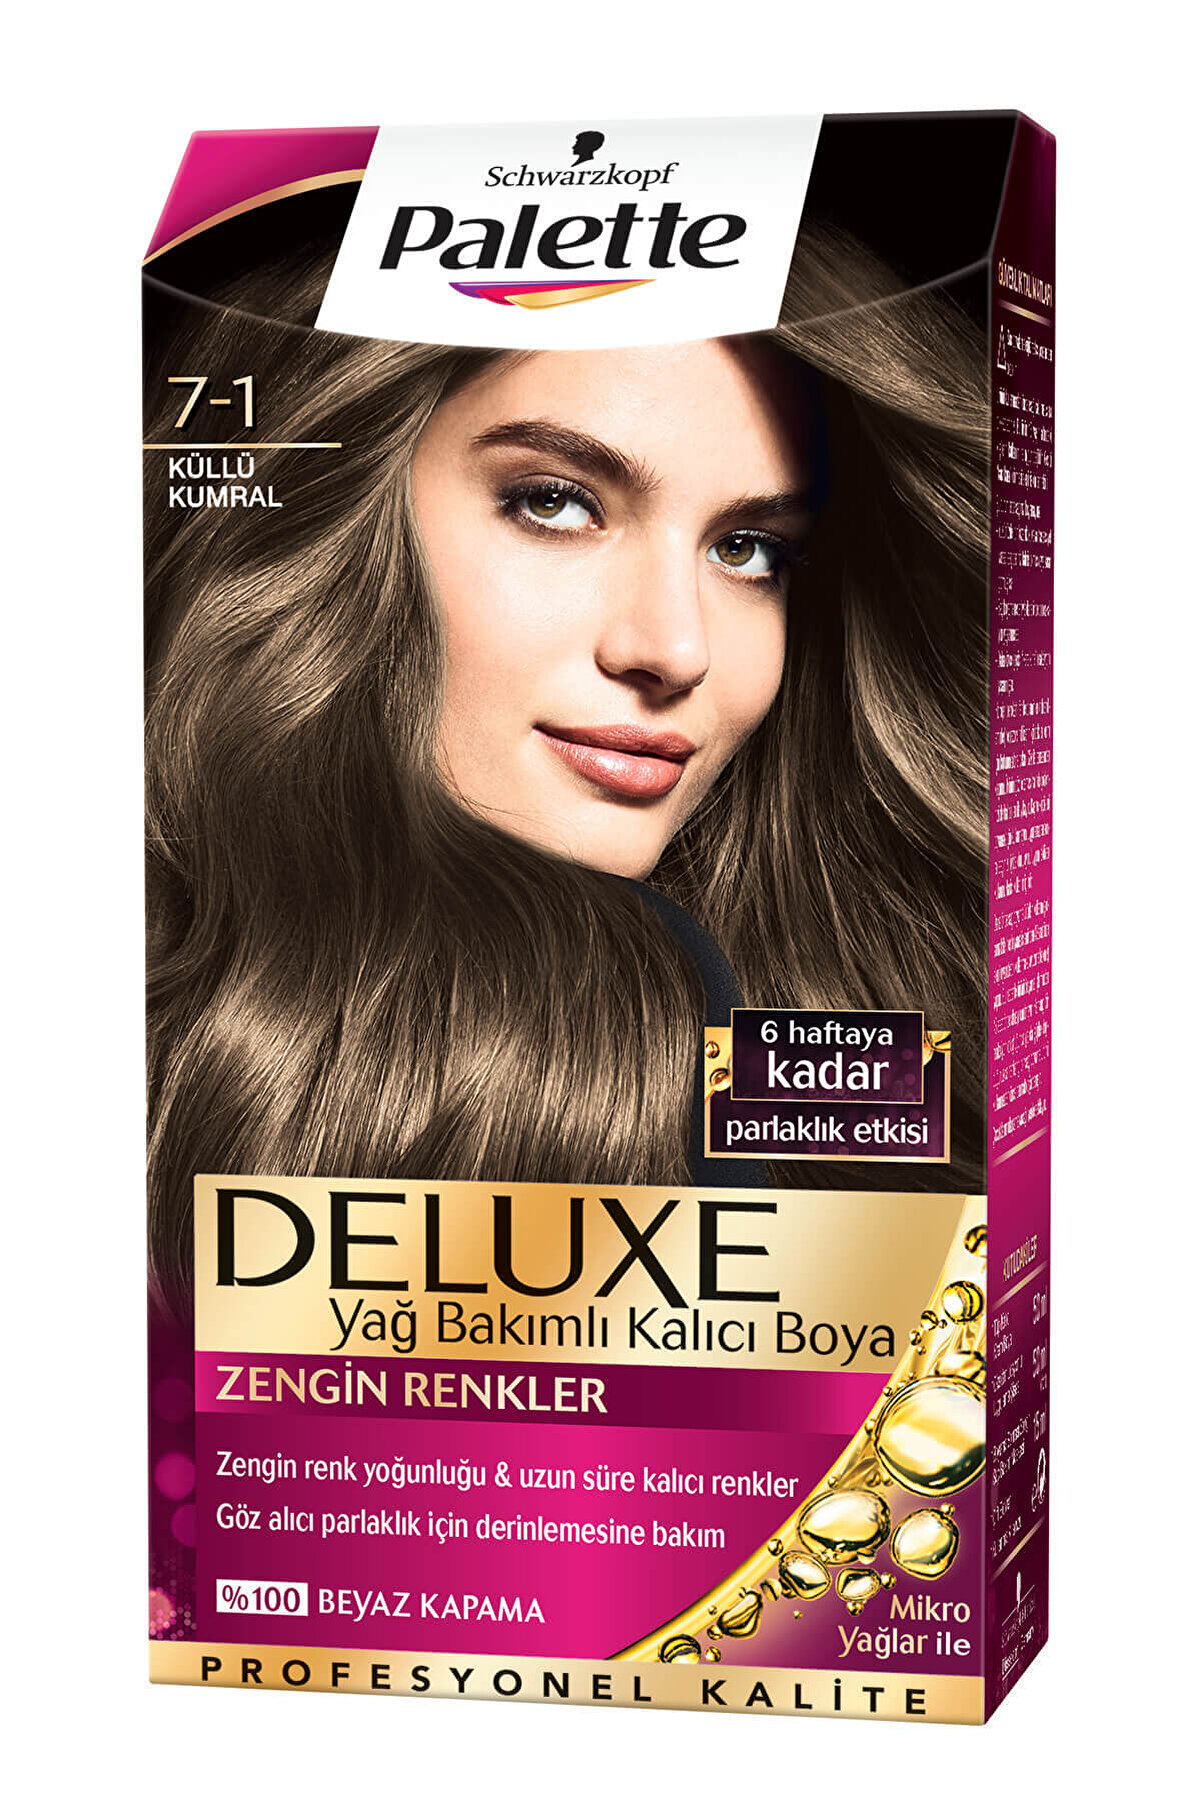 Palette Saç Boyası - Deluxe 7-1 Küllü Kumral 50 ml